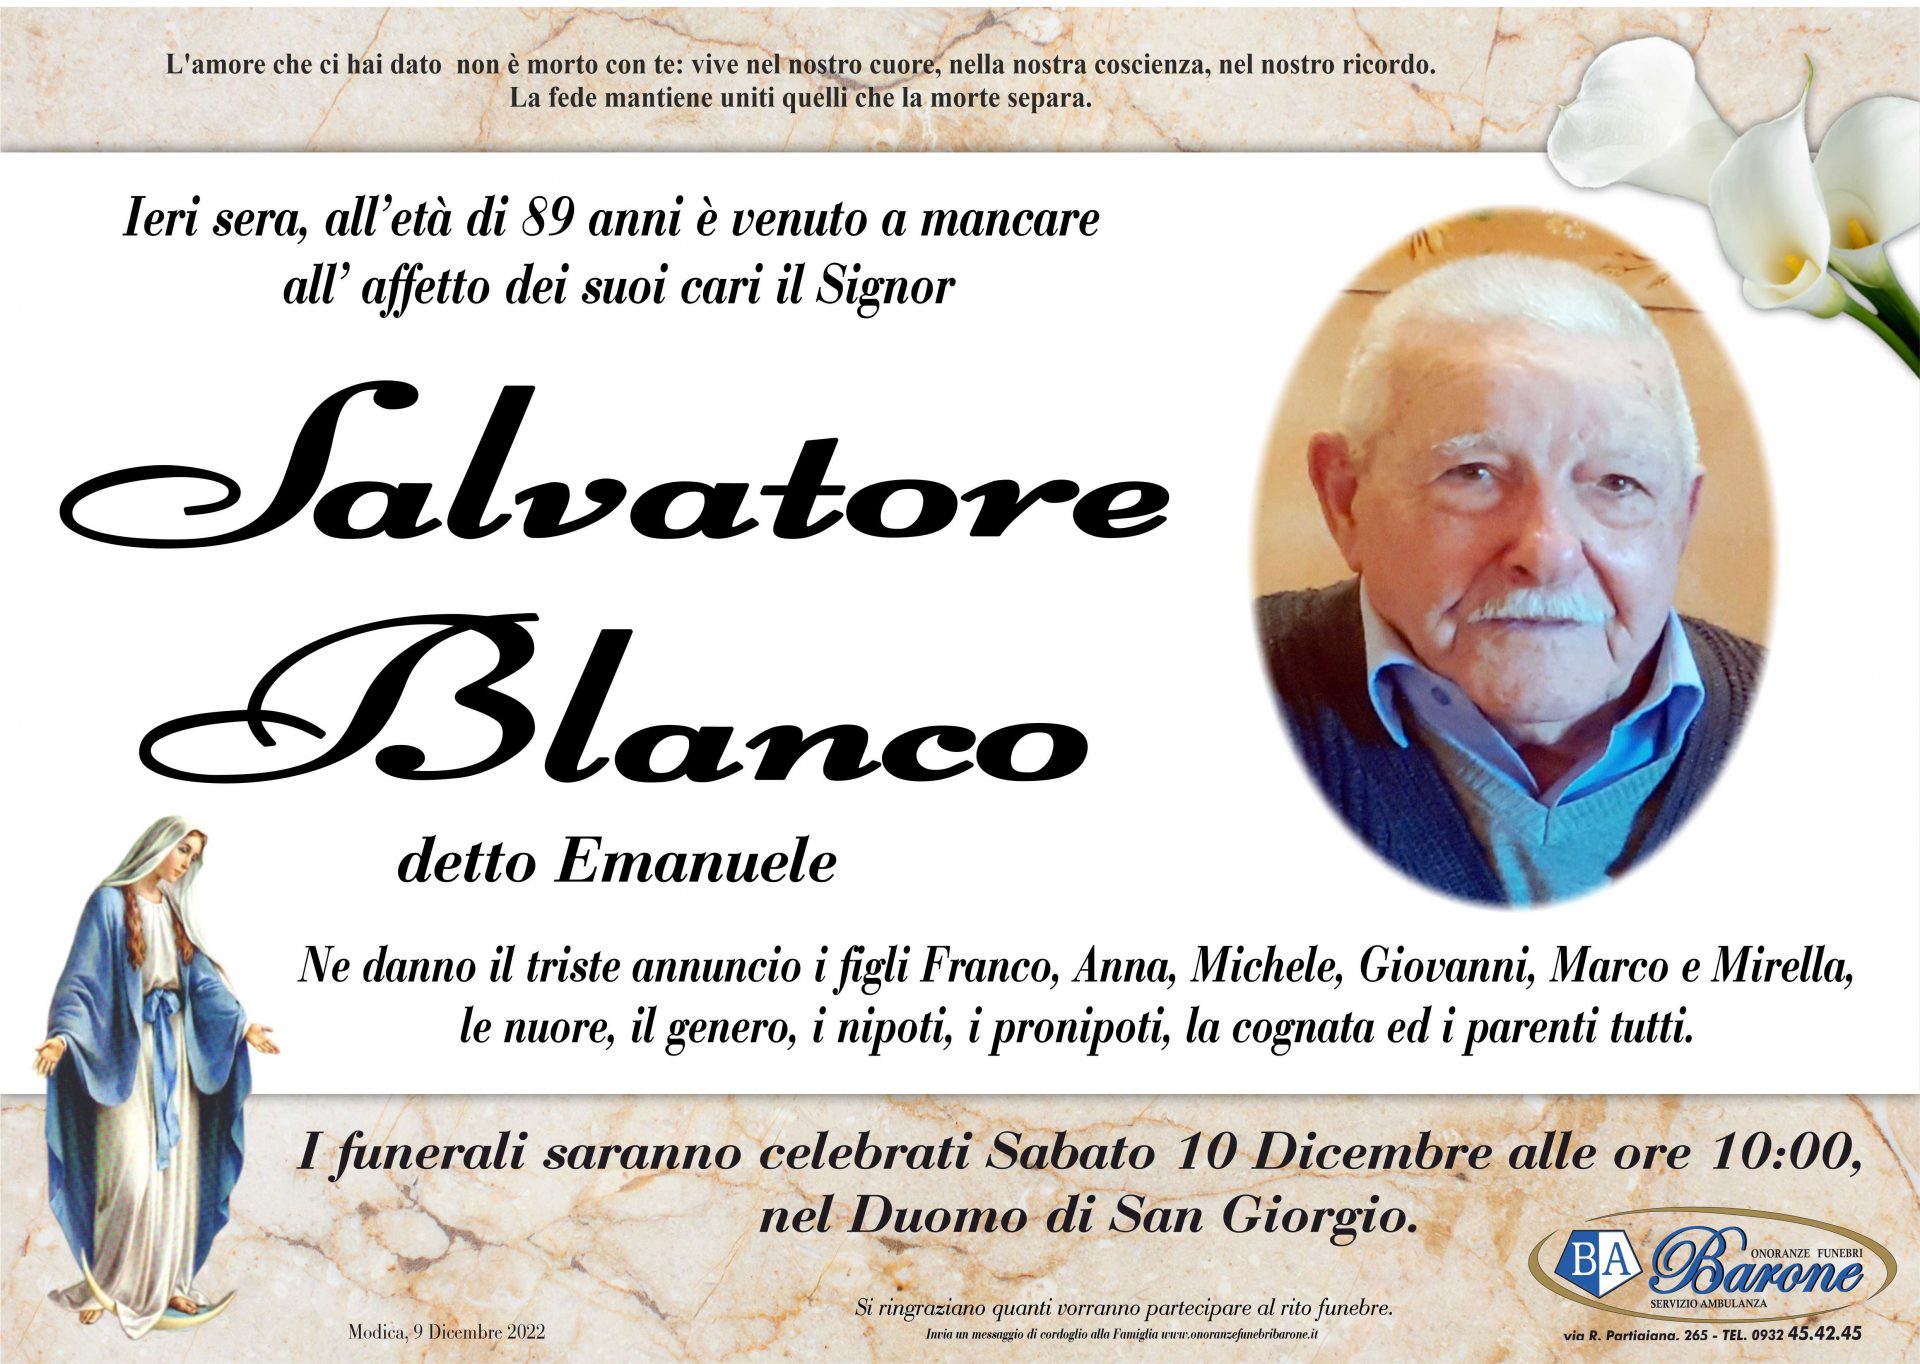 Salvatore Blanco